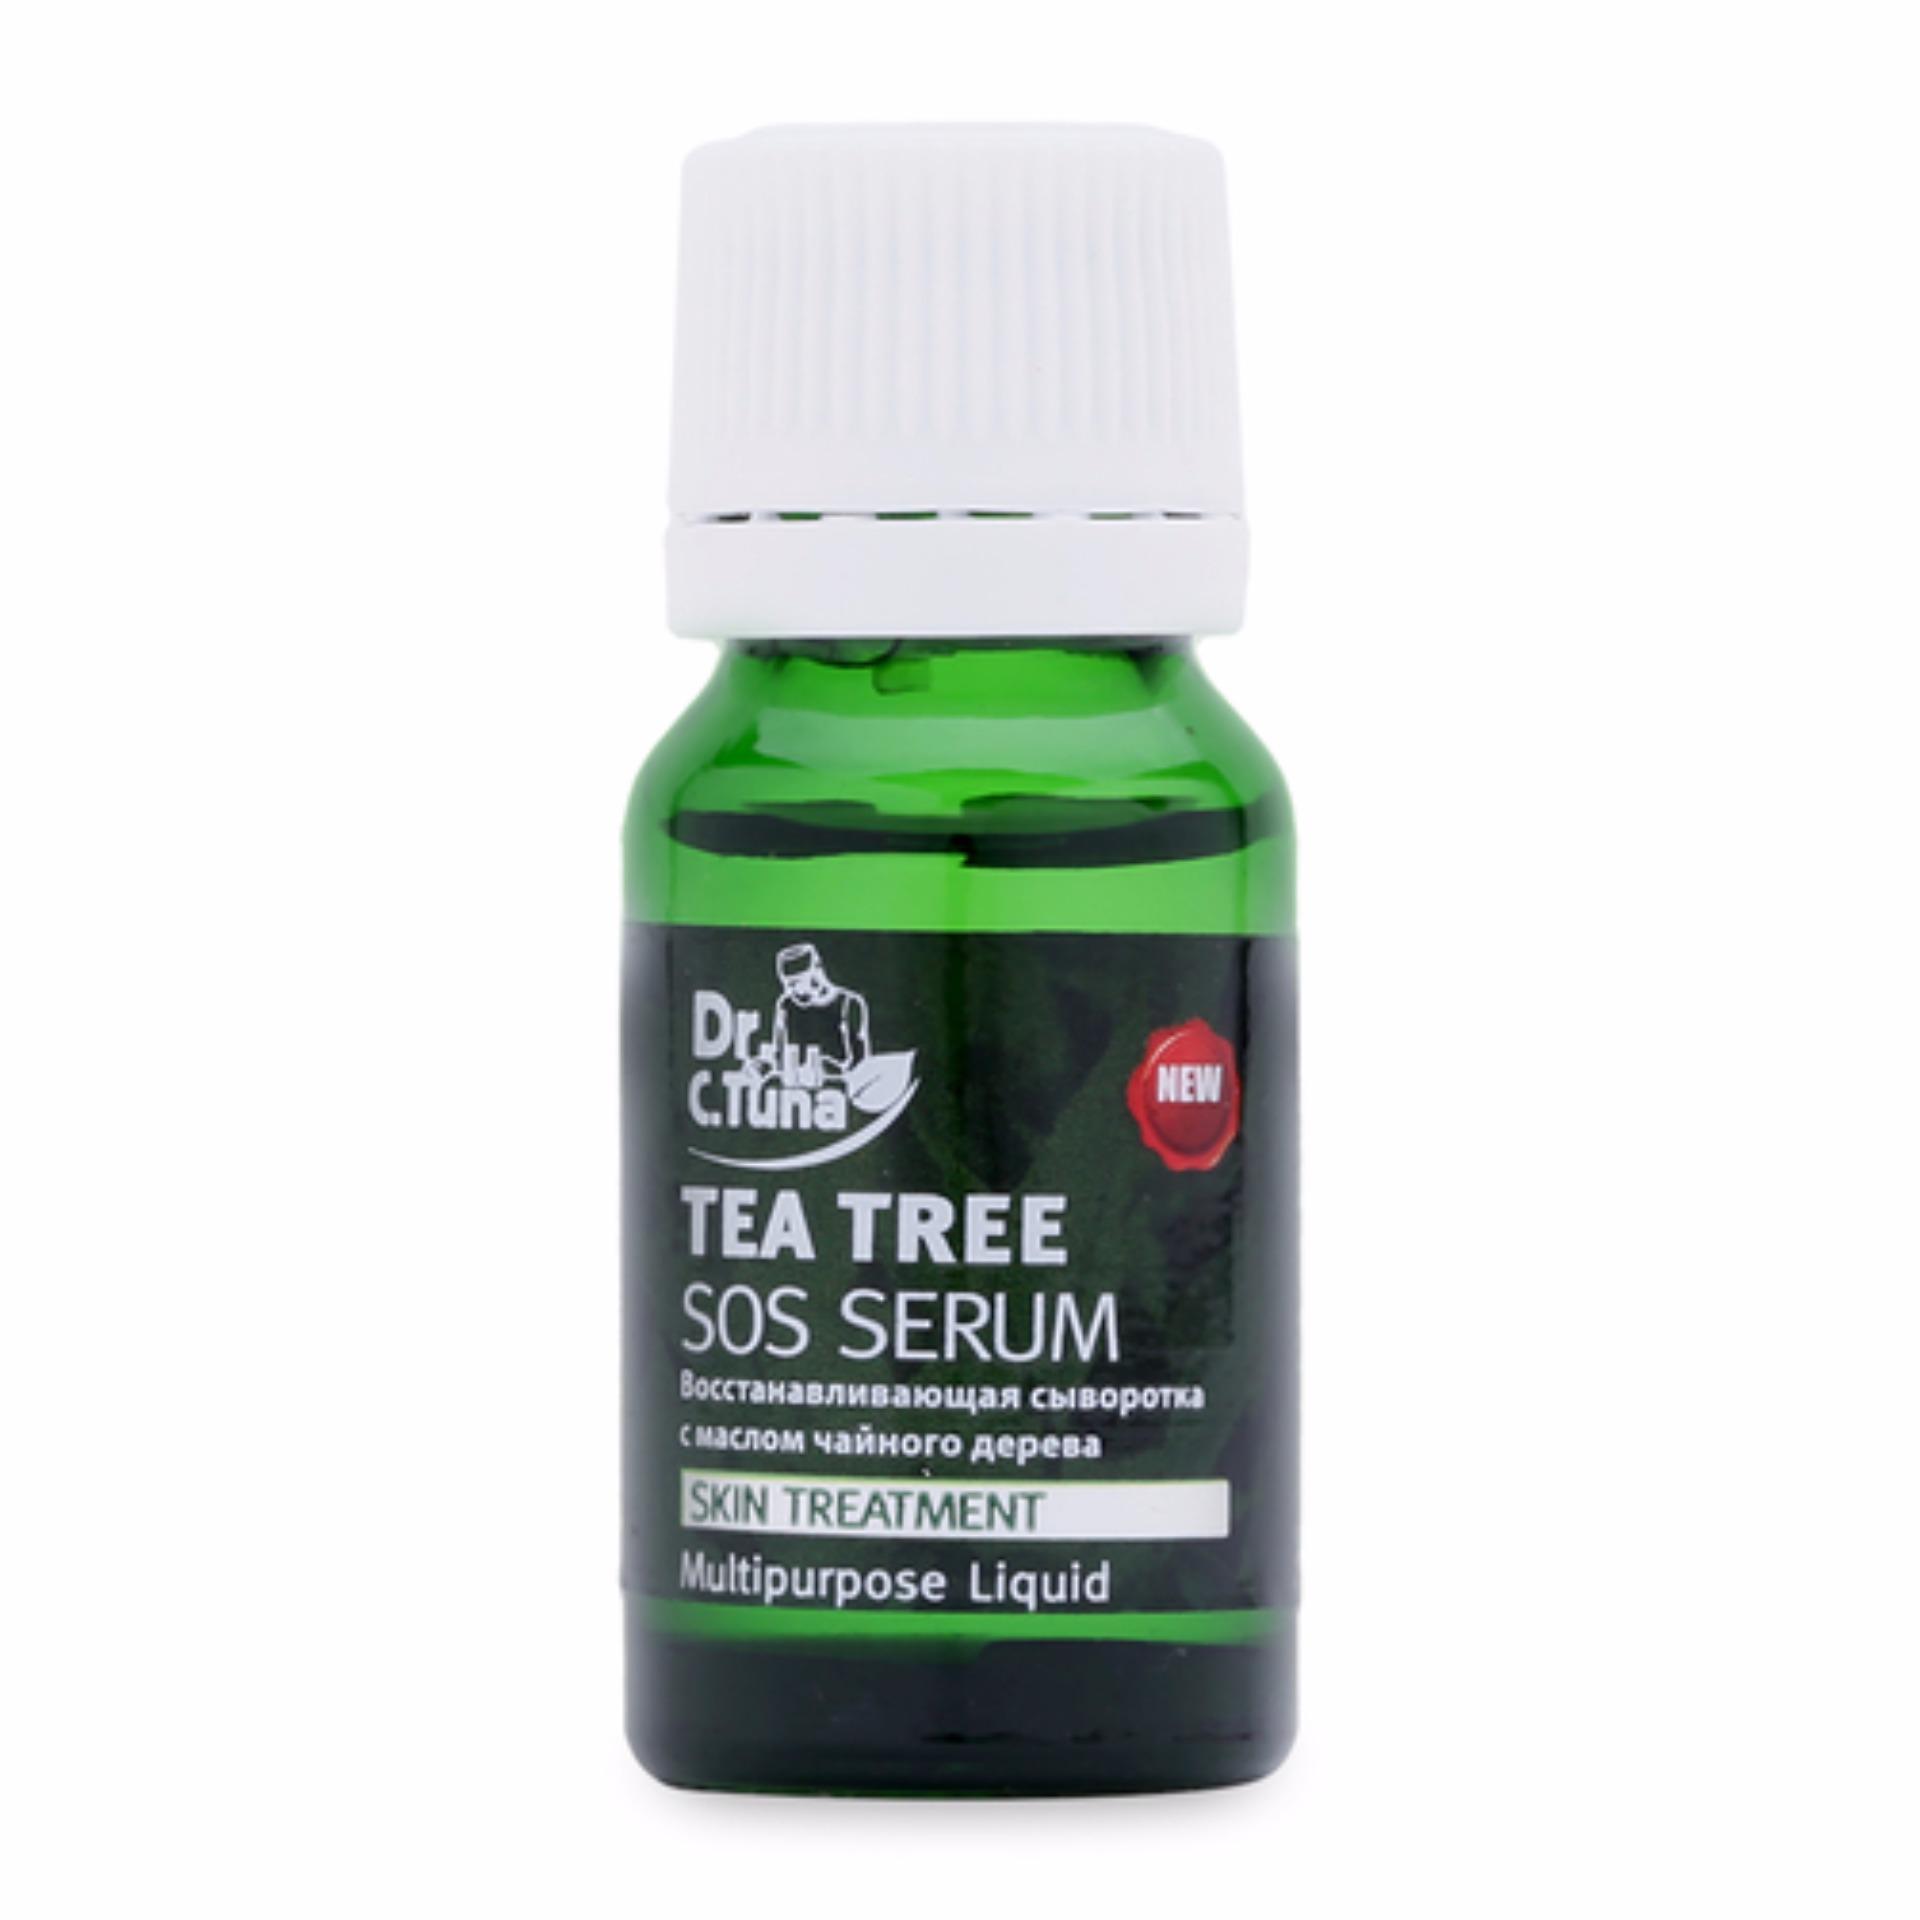 Tea Tree Sos Serum – Đặc Biệt Cho Da Mụn (1824BAS)